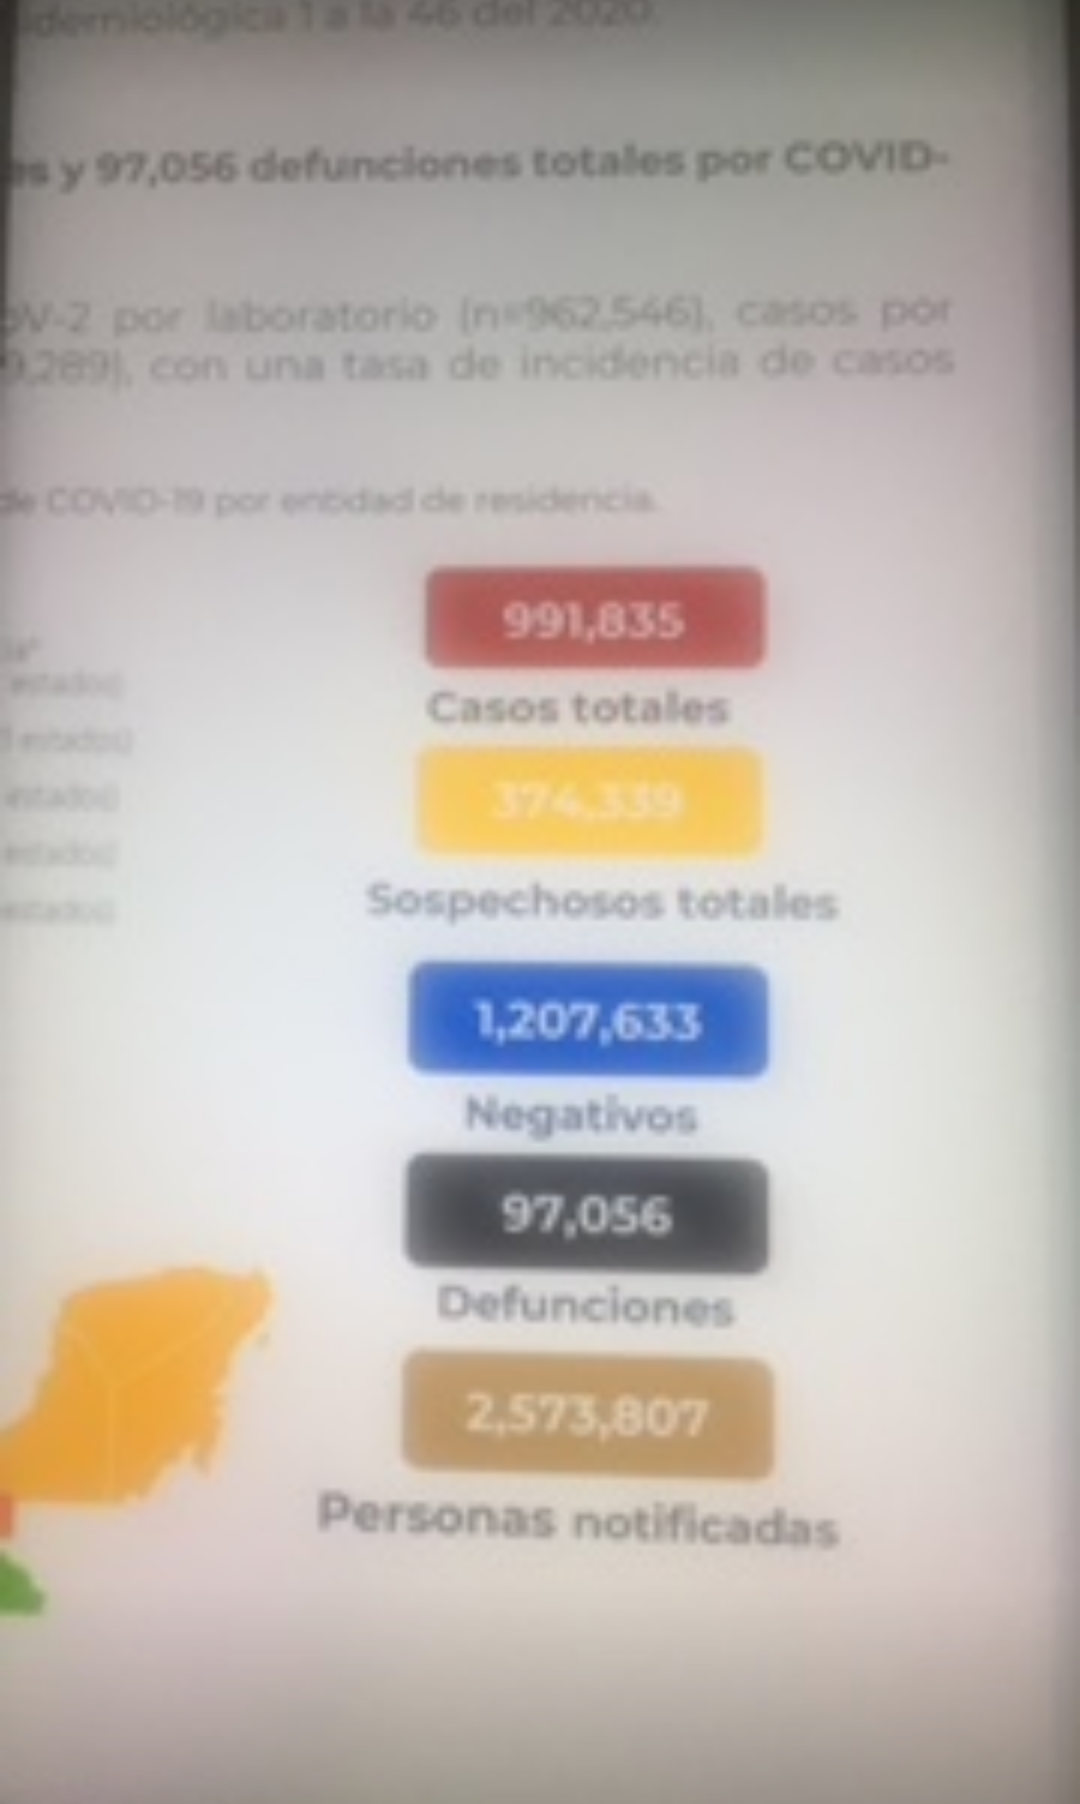 México llegó a los 97 mil 56 decesos por covid-19